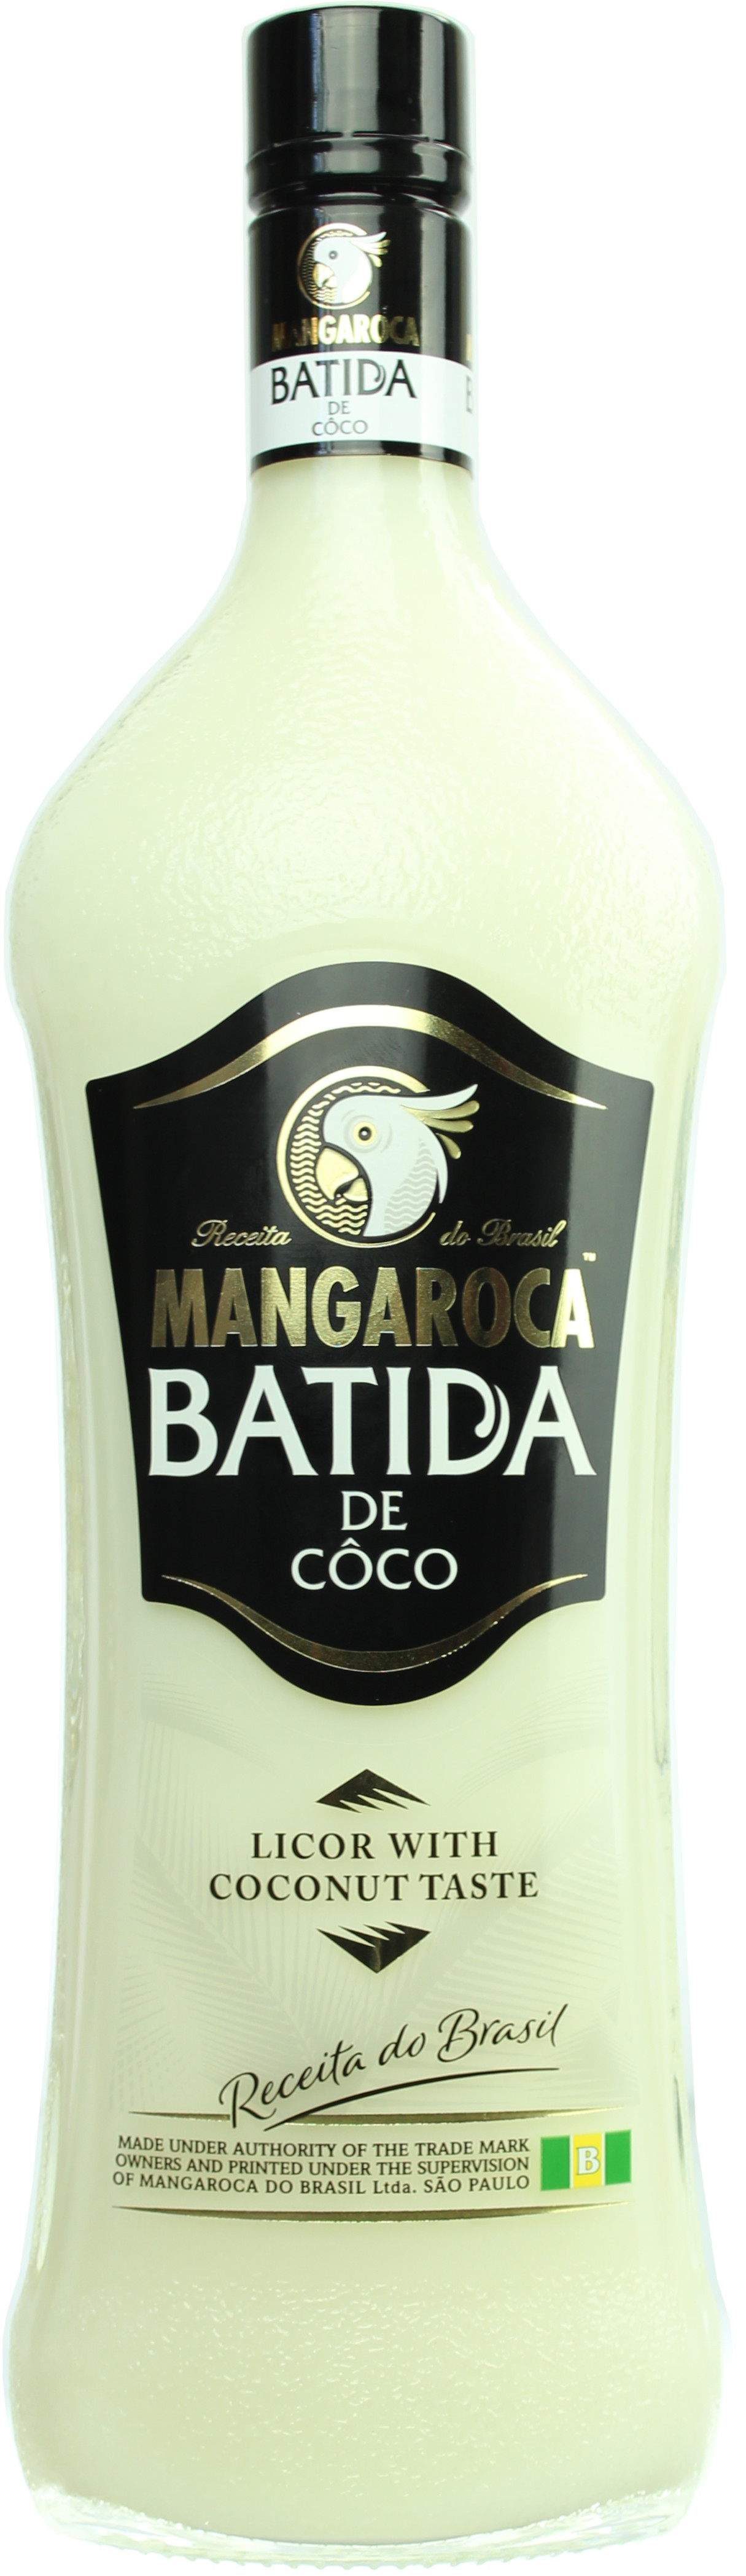 Batida de Coco Mangaroca 16.0% 1 Liter